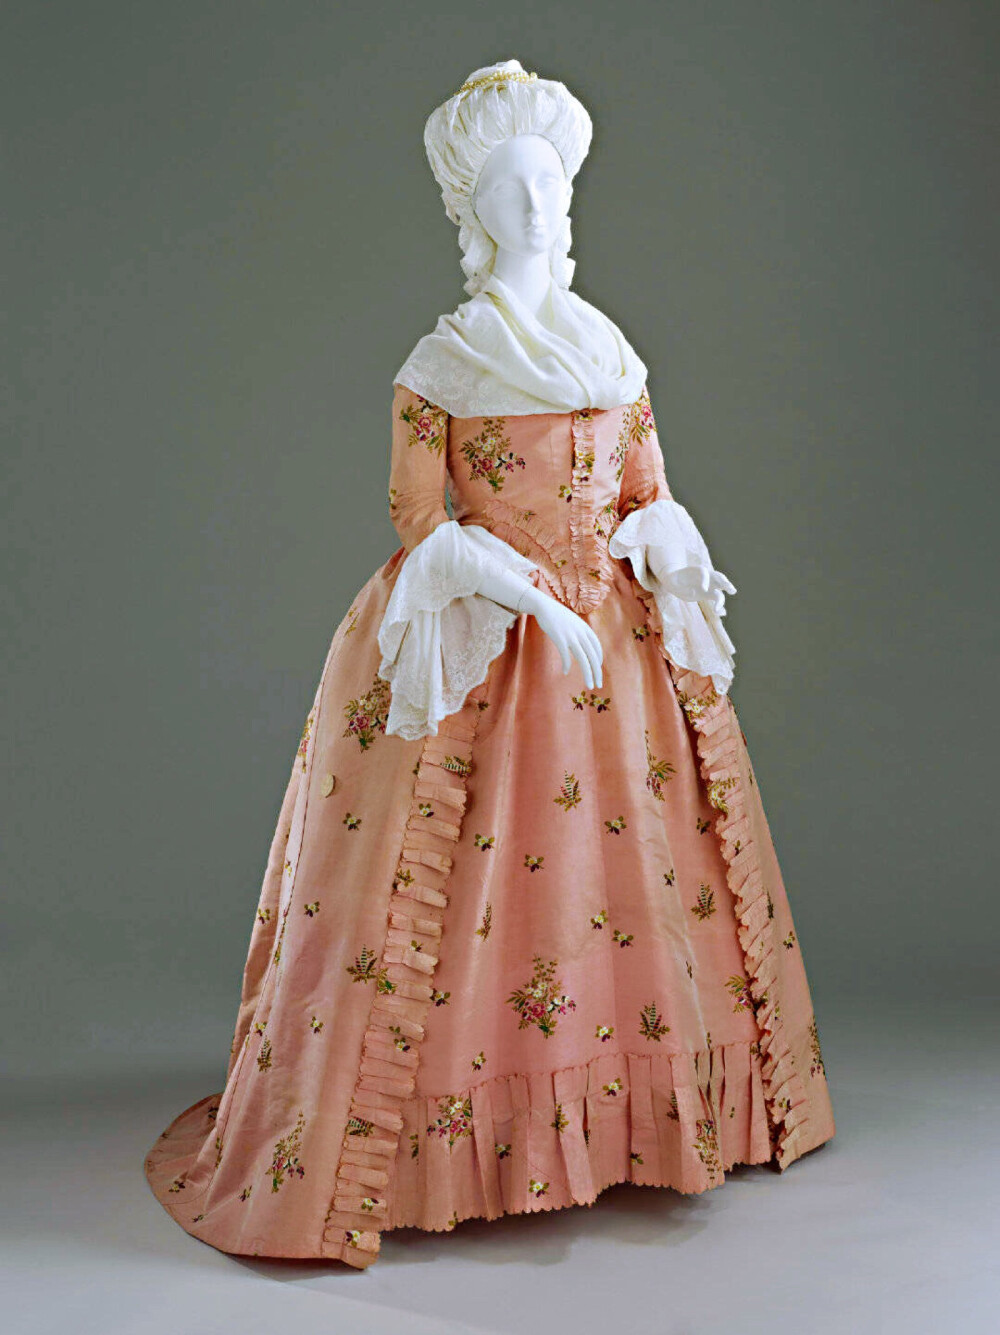 一件1770~80年代的粉红色塔夫绸碎花英式女袍。这种田园风的裙子很得玛丽·安托瓦内特喜爱，并被大力推广。虽然较之以前的流行款，它看上去简洁得多，但有趣的是并不便宜，因为上面这些海量的小清新花纹全部都是手工绣出来的！所以当时玛丽王后订购的小花裙也是一笔巨额开支。 ​​​